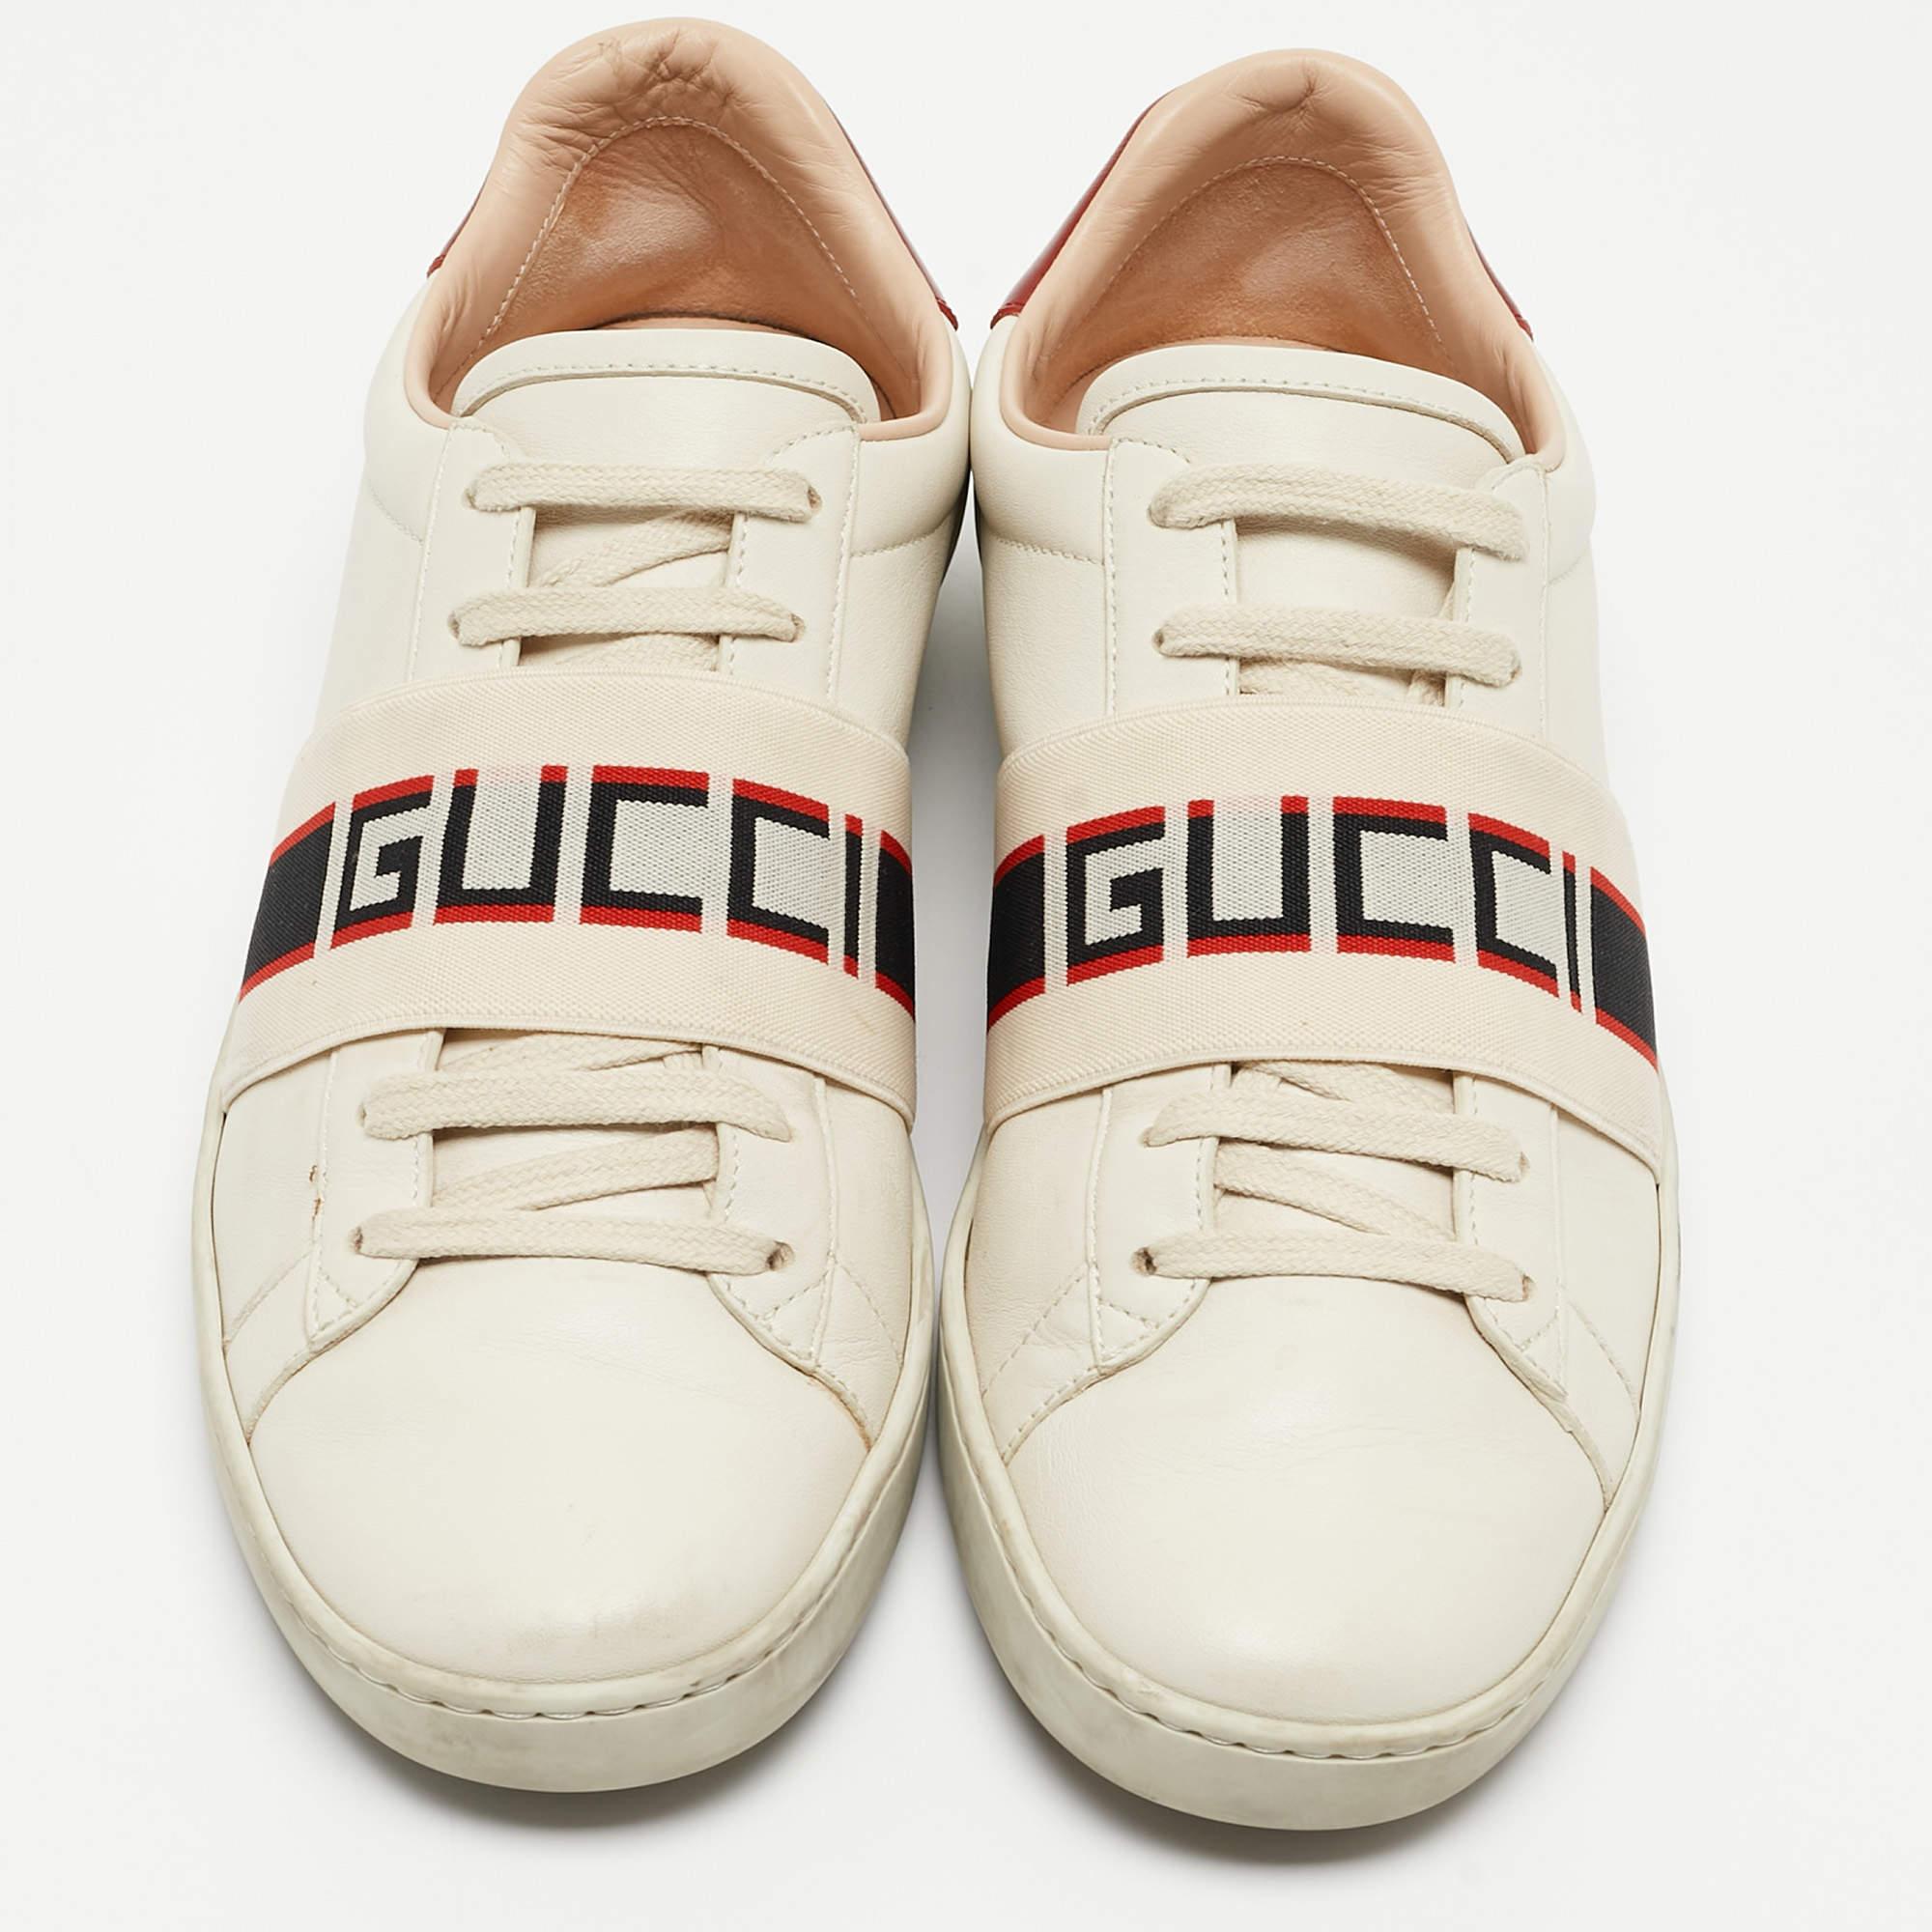 Diese Gucci-Sneaker verleihen Ihnen einen kantigen, schicken Auftritt. Sie sind aus Leder gefertigt und erhalten ein luxuriöses Update mit einem gebrandeten Stretchband am Schnürsenkel und einer bequemen Gummisohle.

